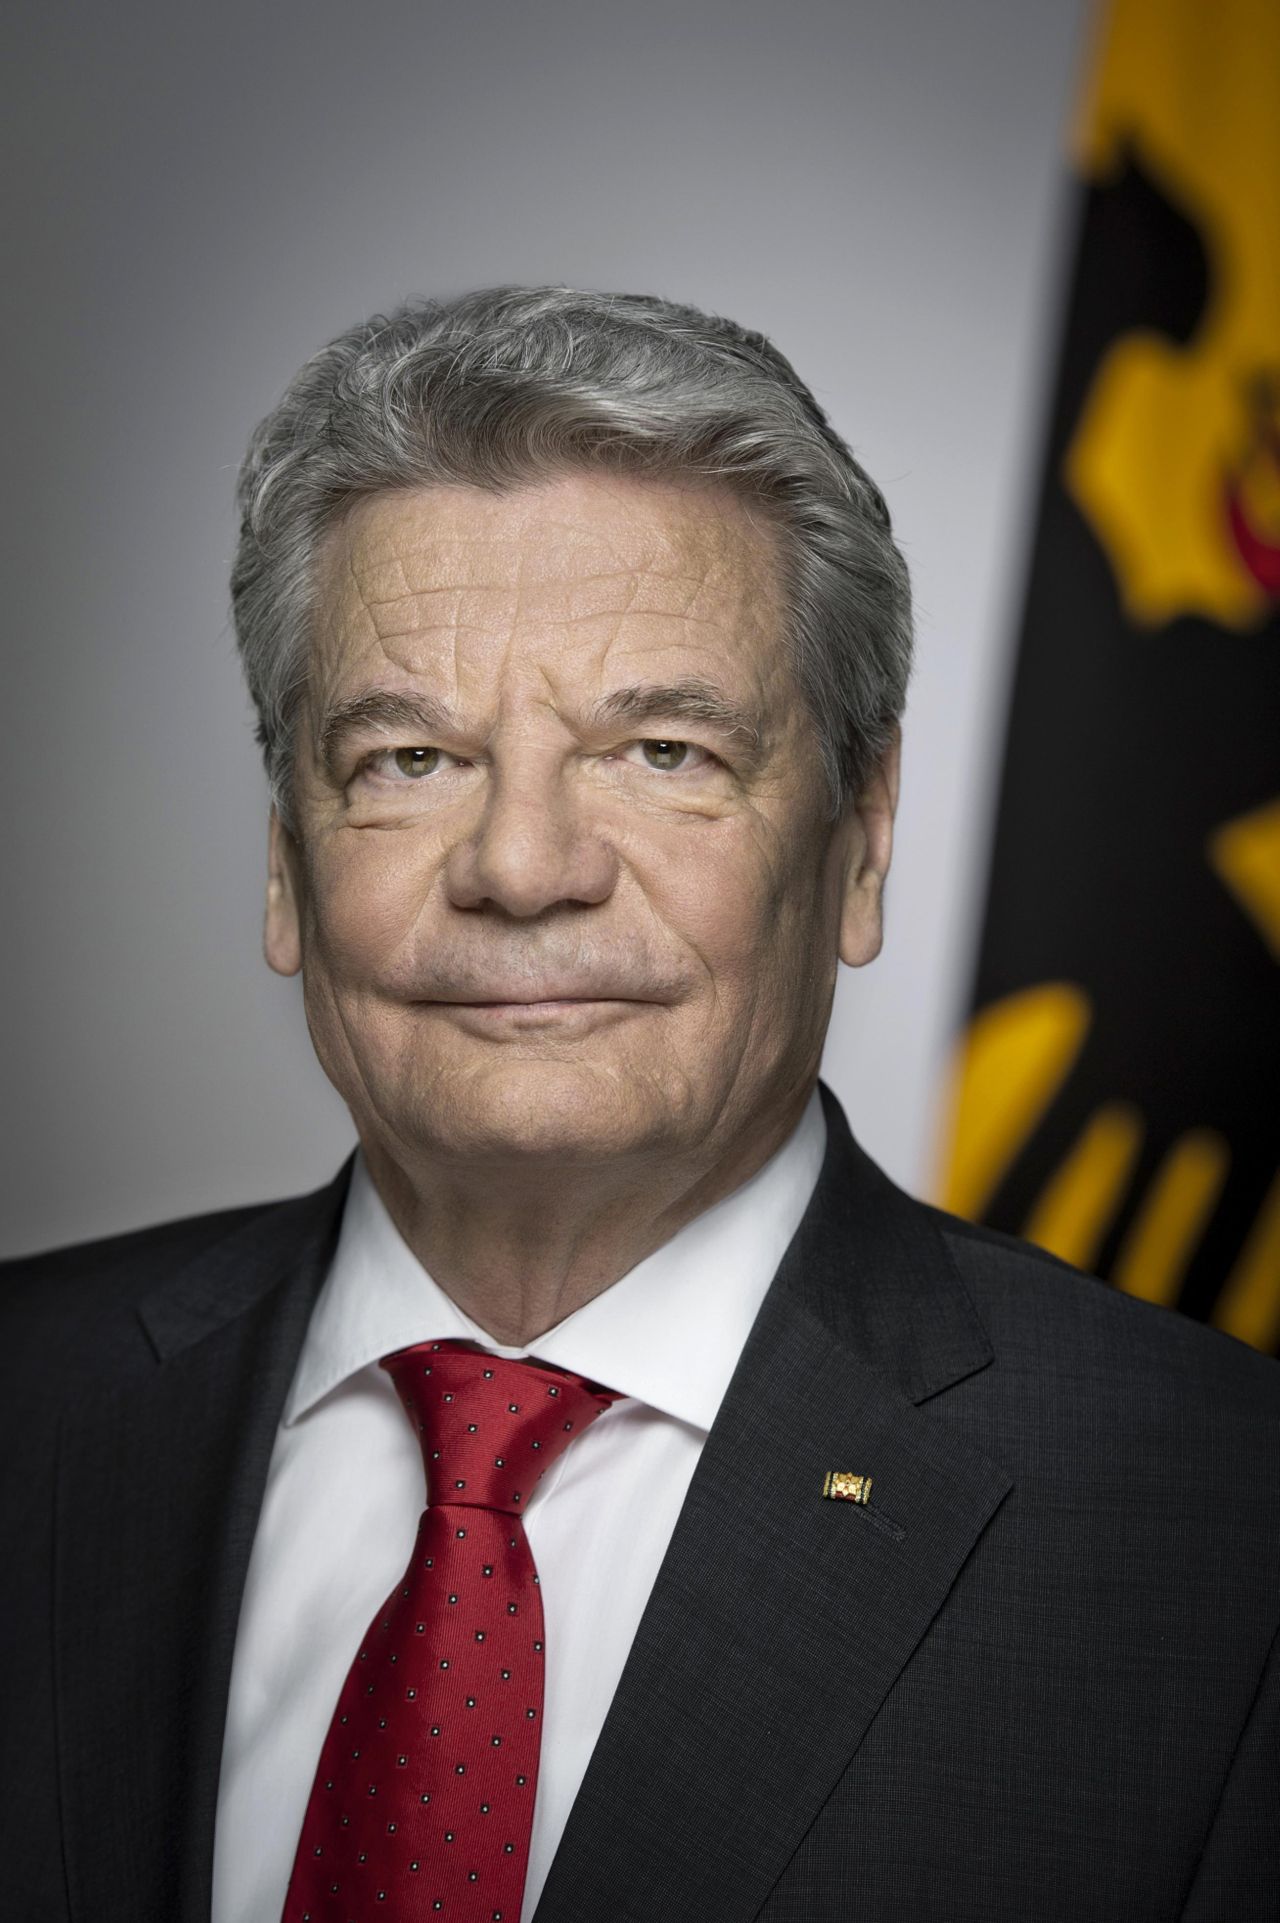 Offizielles Porträt von Bundespräsident Joachim Gauck, 2012.